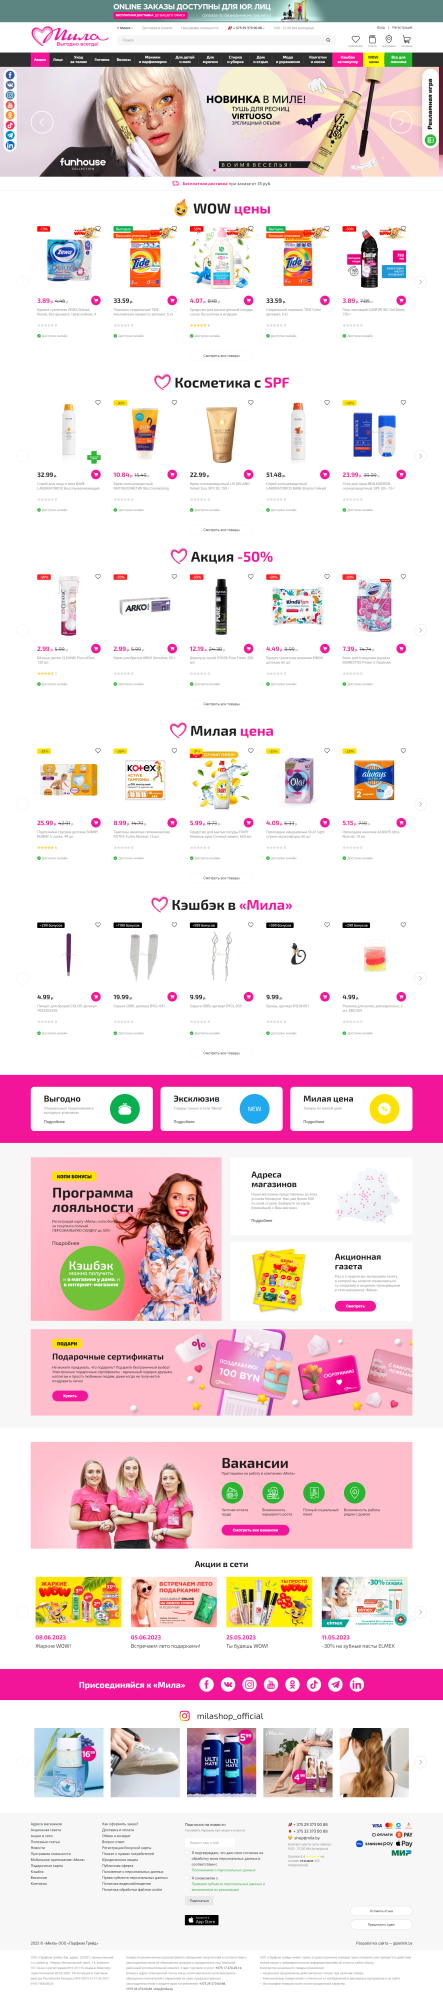 Разработка нового сайта для интернет-магазина крупной розничной сети магазинов «Мила» в Беларуси - косметика, парфюмерия и бытовая химия